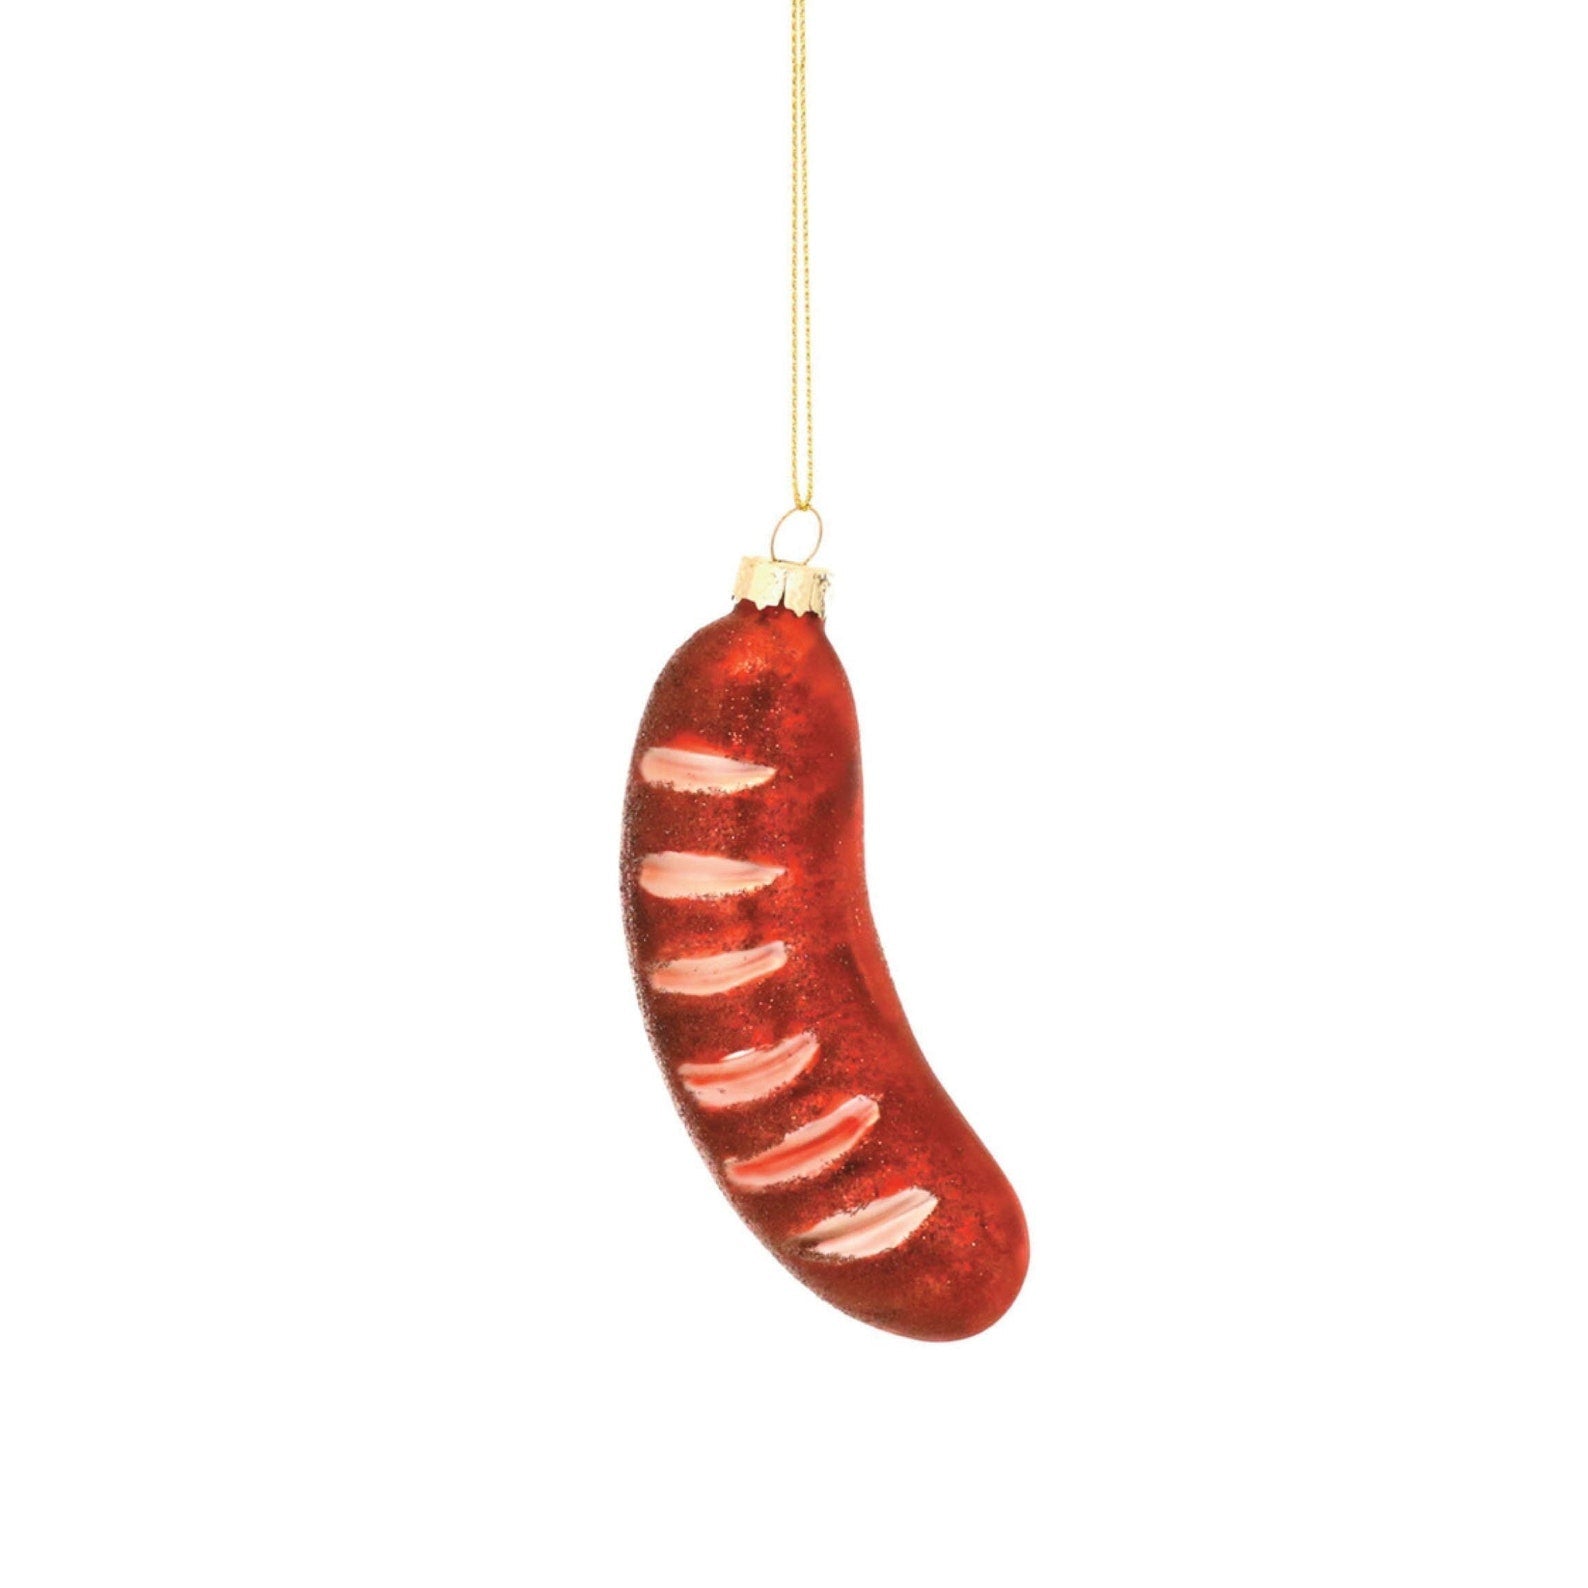 Vienna Sausage Ornament - Joy